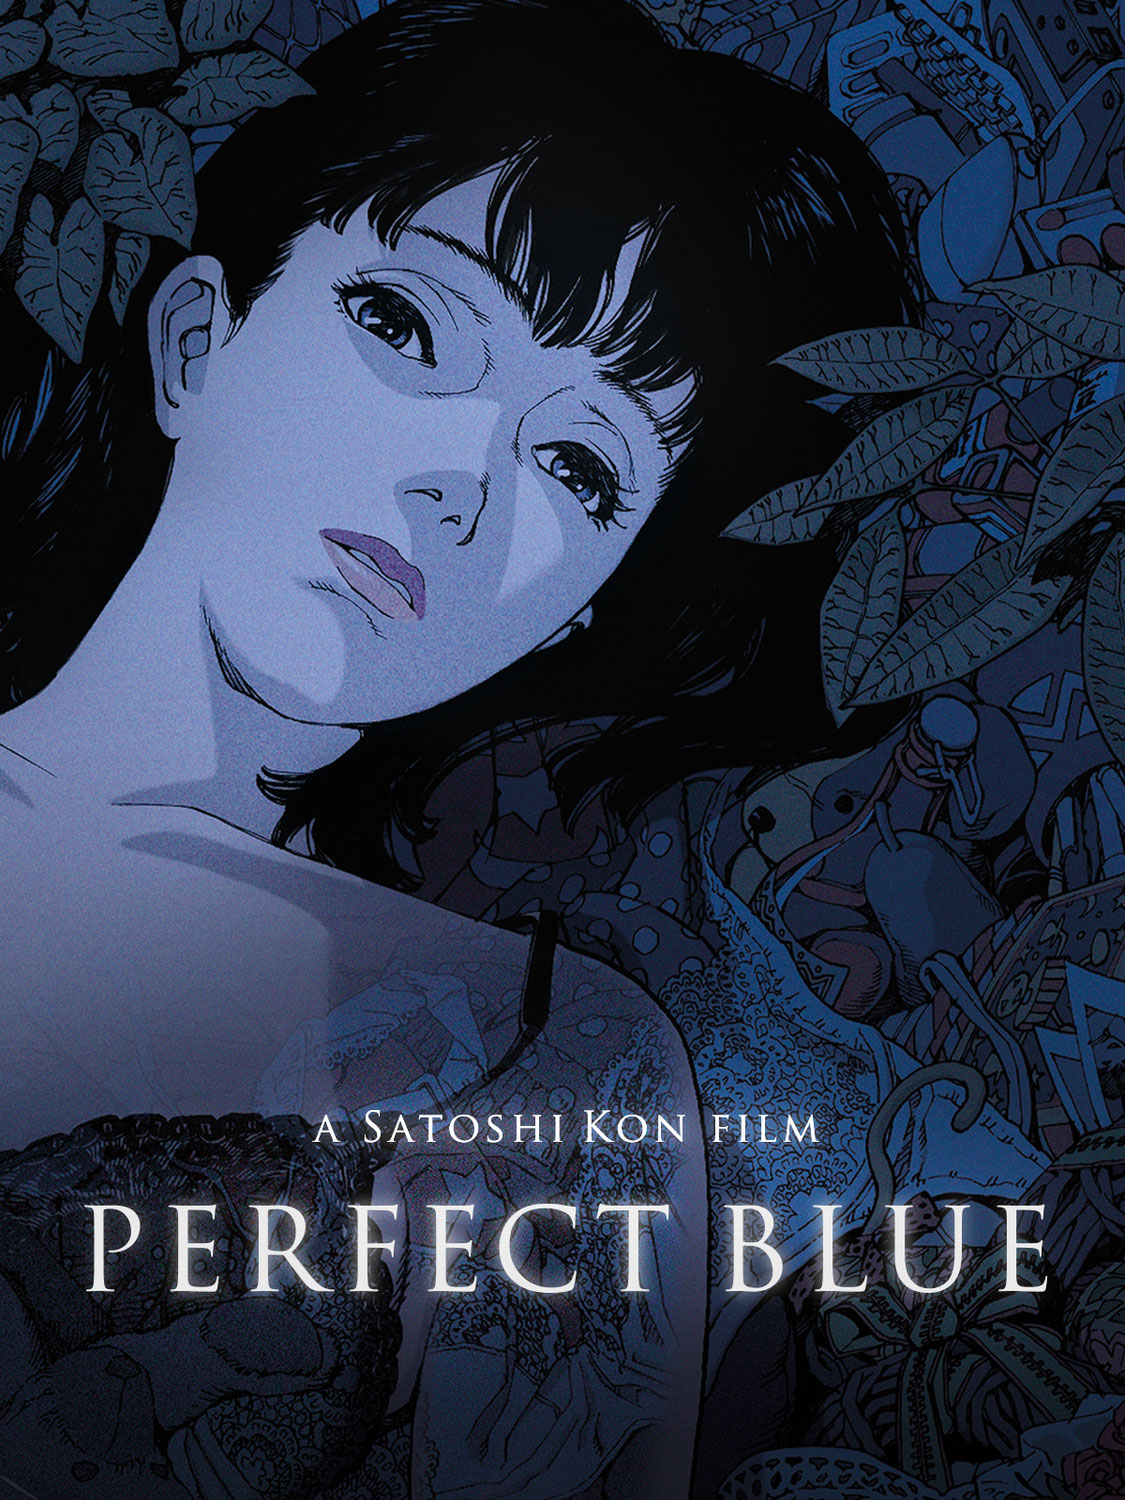 Perfect Blue (1997 by Satoshi Kon)